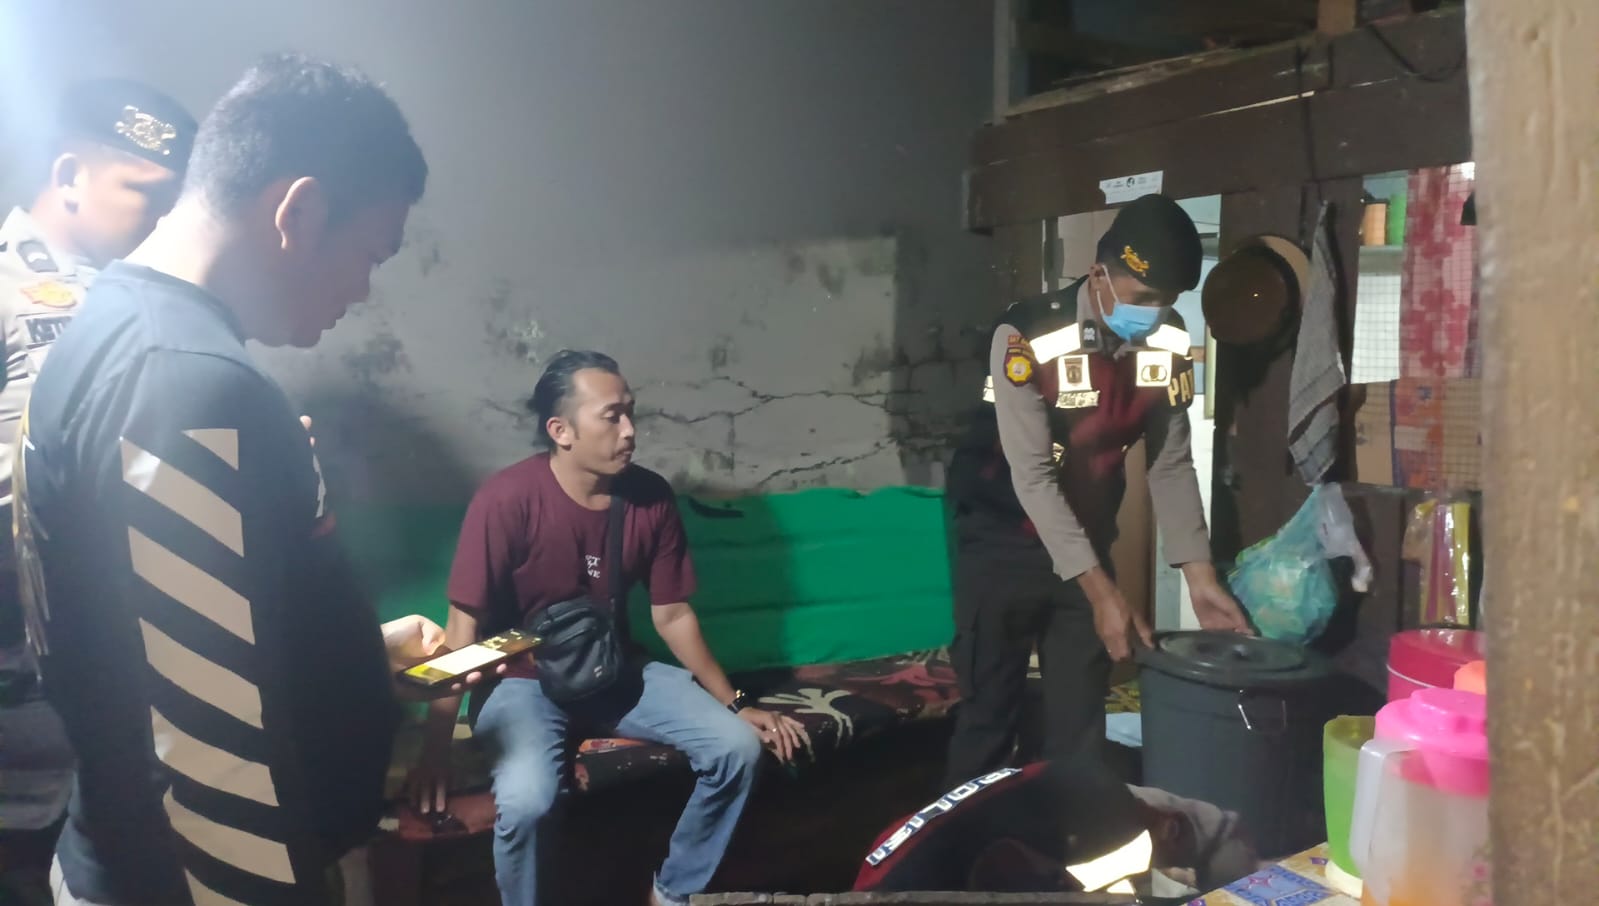 Lima Pasangan Bukan Muhrim Terjaring Razia di Kamar Hotel 